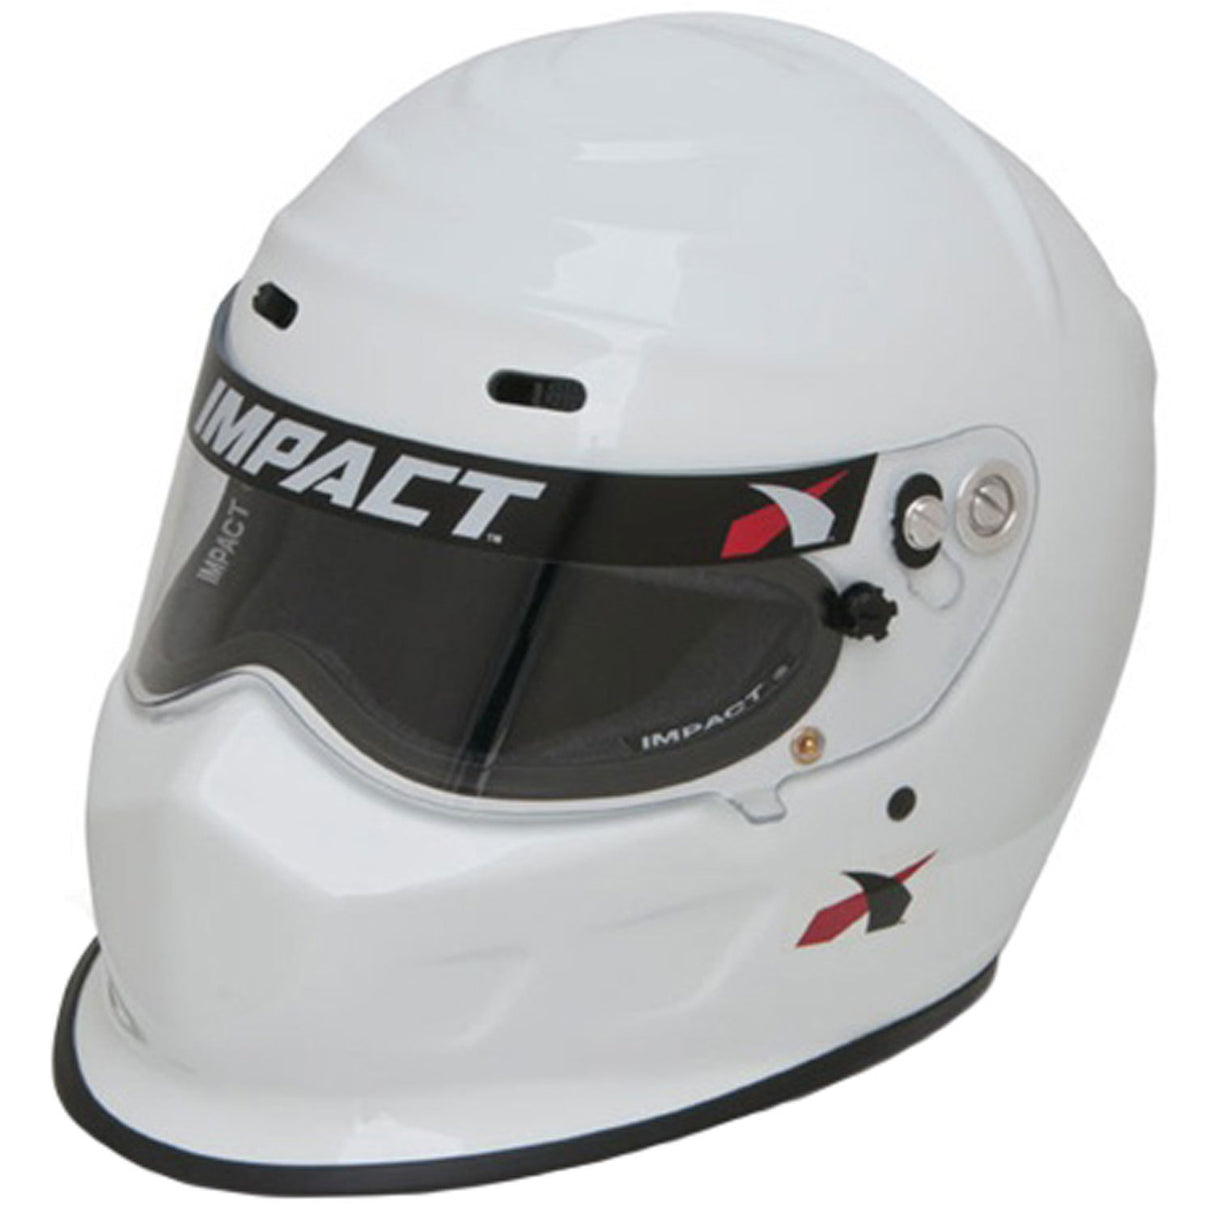 Helmet Champ X-Large White SA2020 - VELA AUTO 